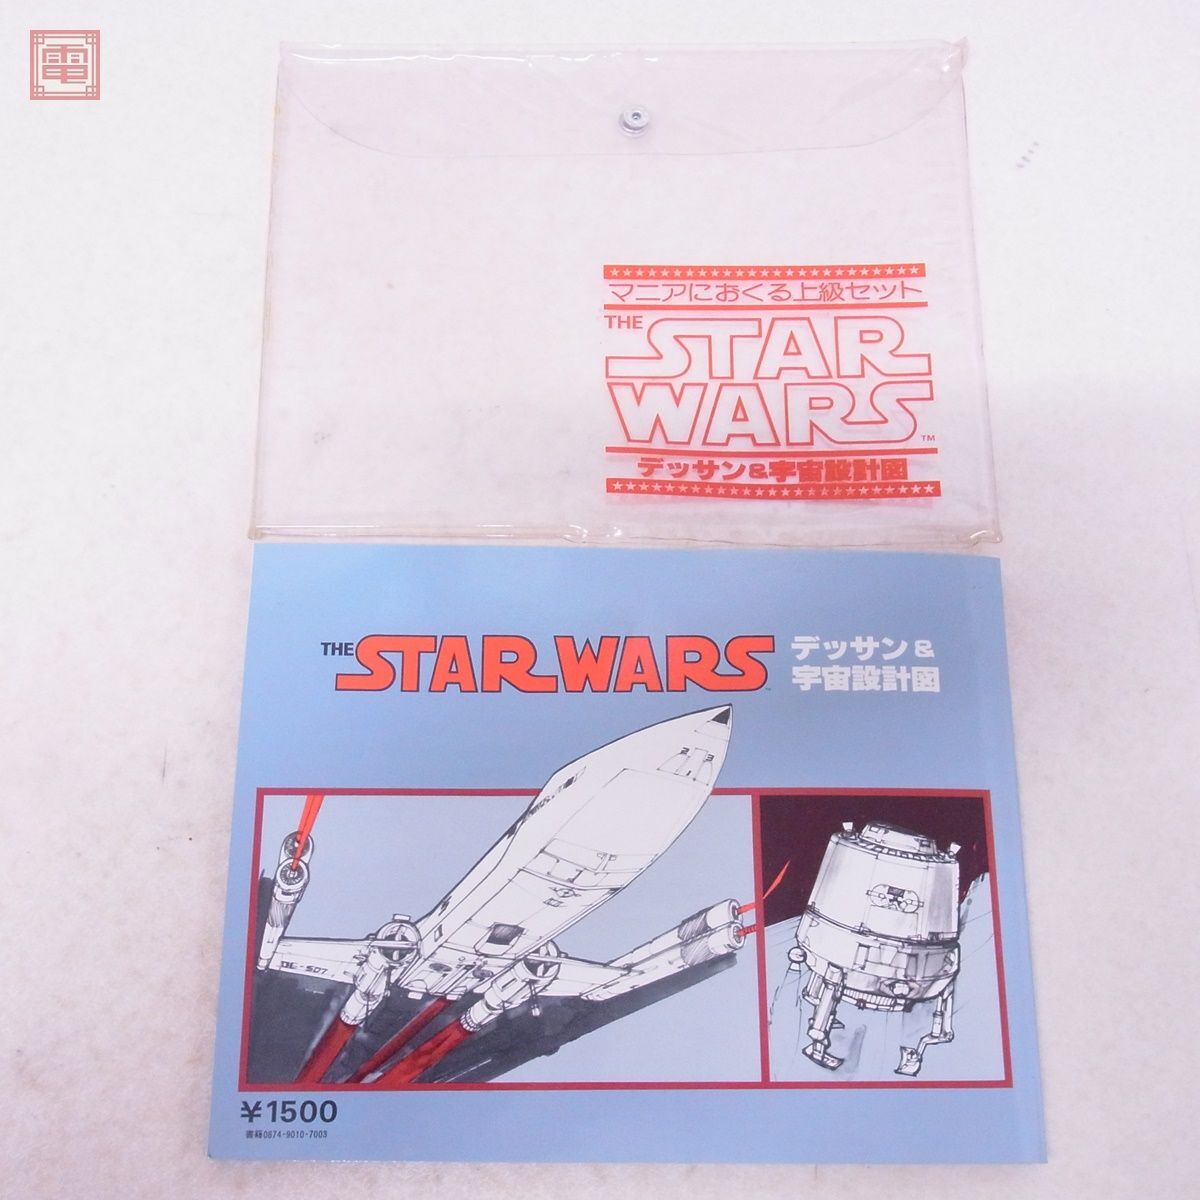  литература Bandai Звездные войны te солнечный & космос проект map первая версия 1978 год BANDAI STAR WARS[PP